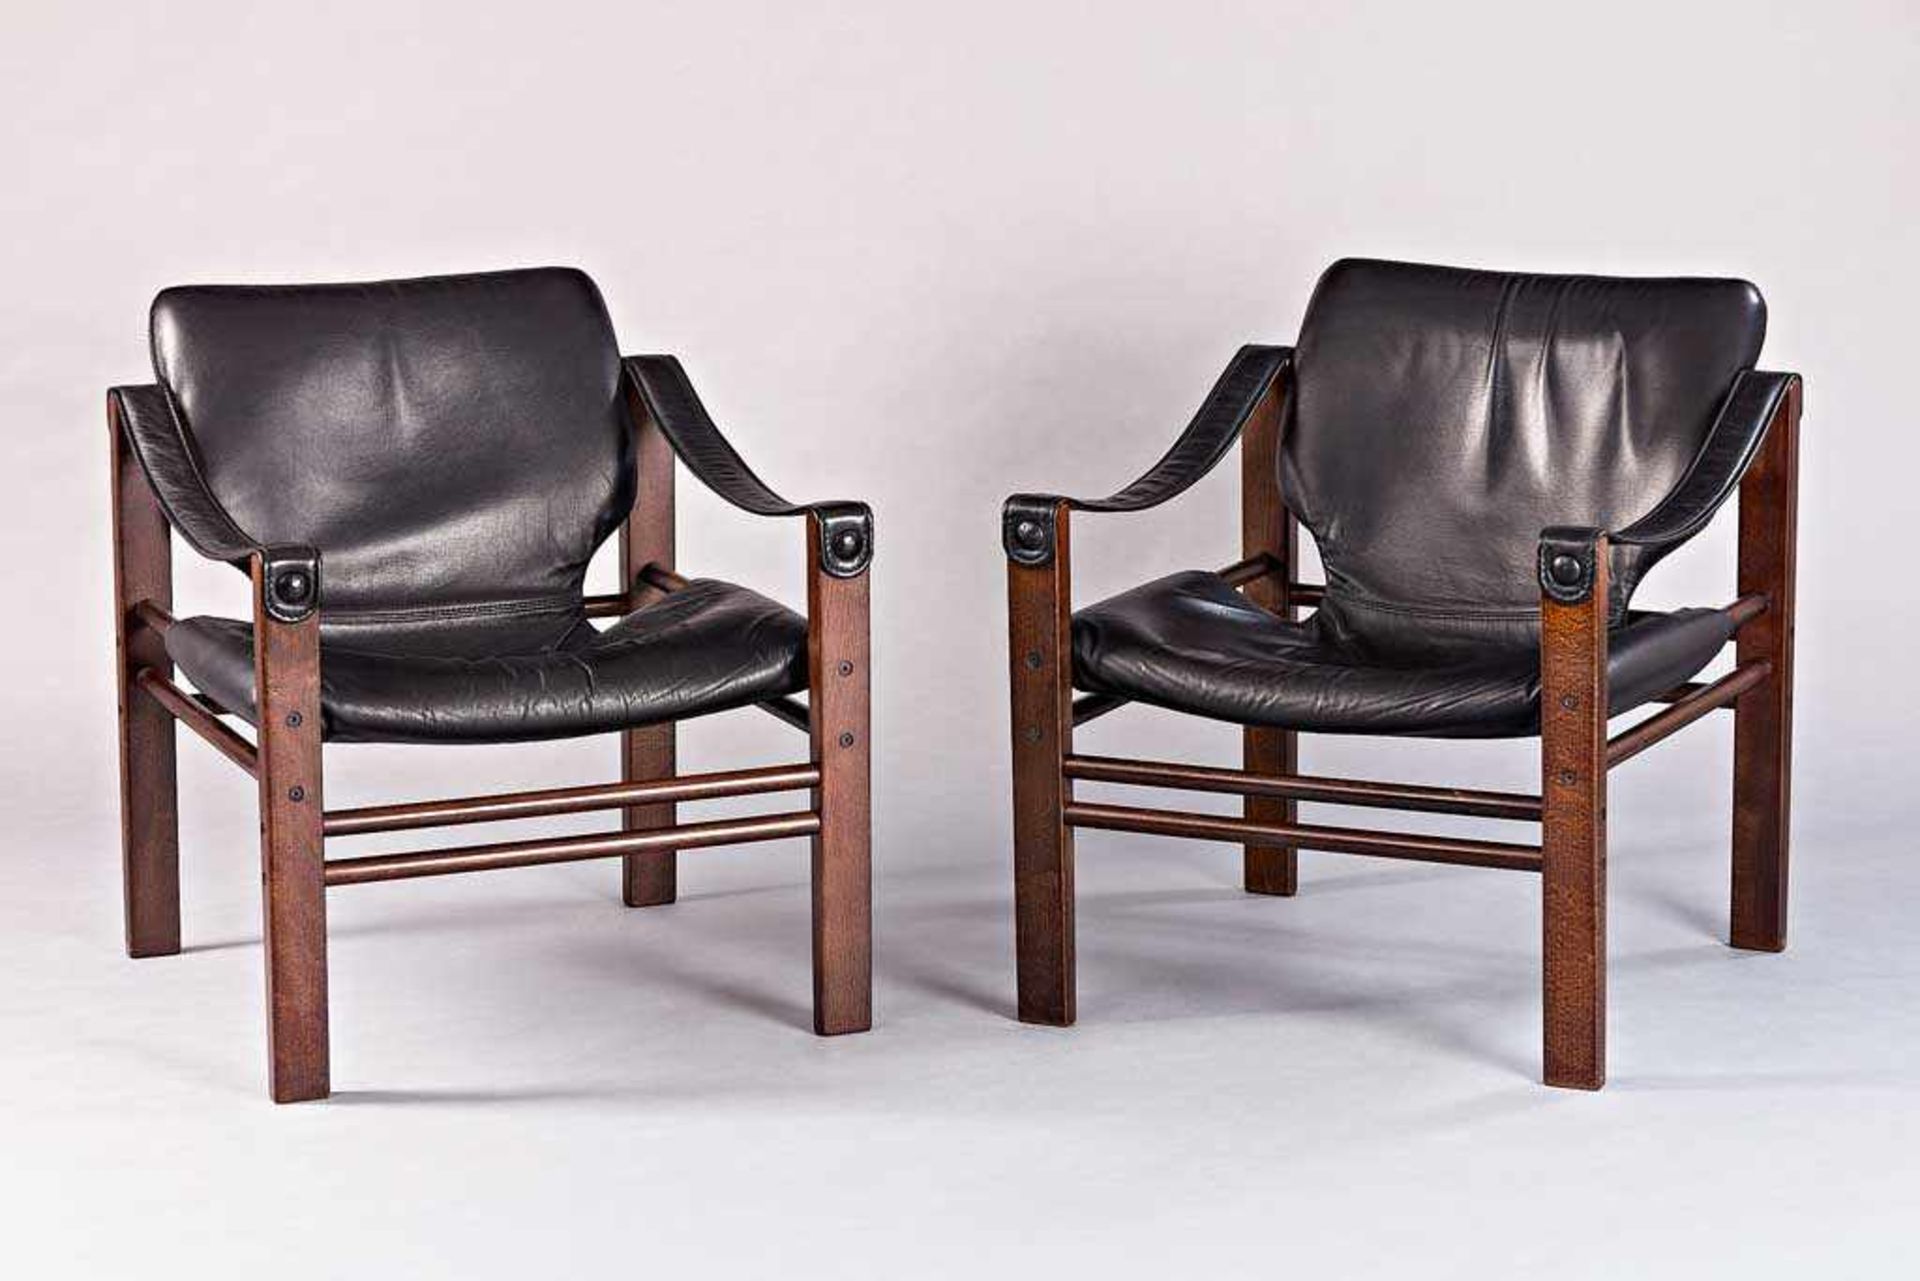 Paar Safari Lounge Chairs. Buche und schwarzes Lederpolster. Entwurf Maurice Burke für Arkana.